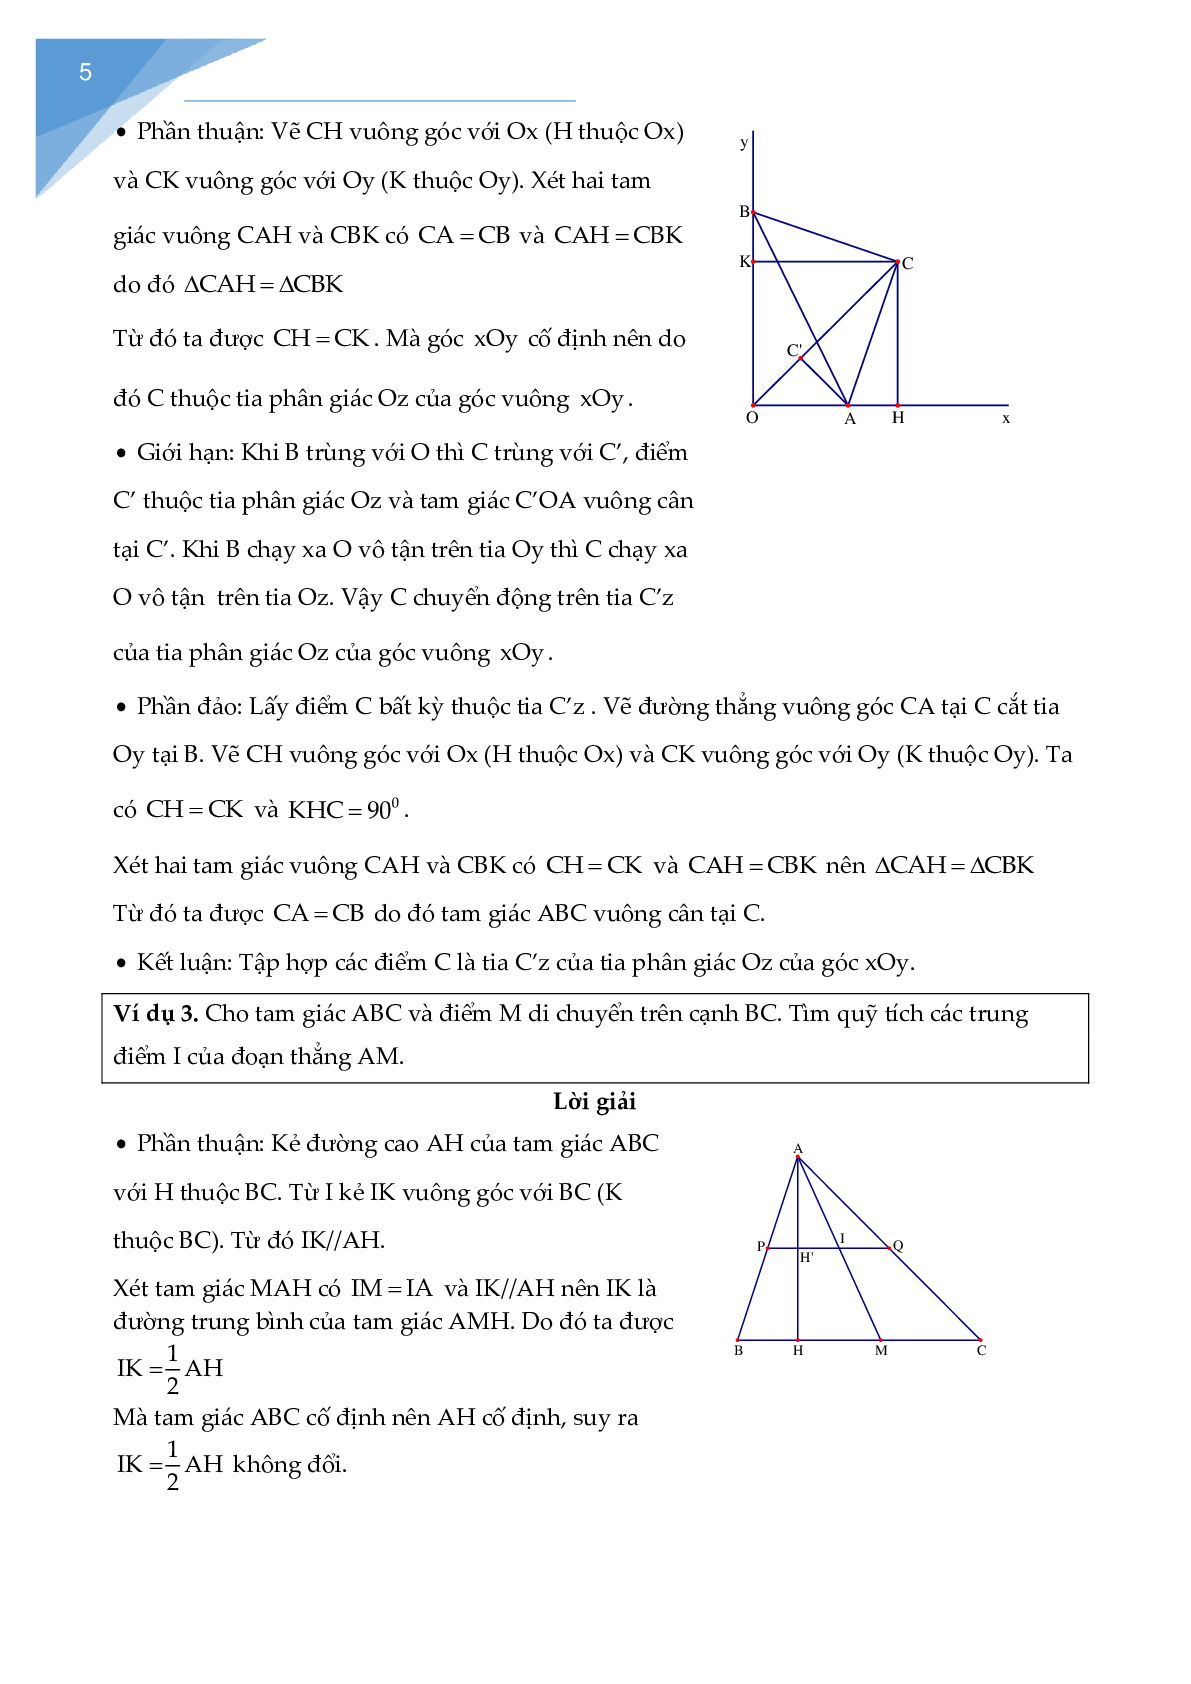 Chuyên đề các bài toán quỹ tích - tập hợp điểm (trang 6)